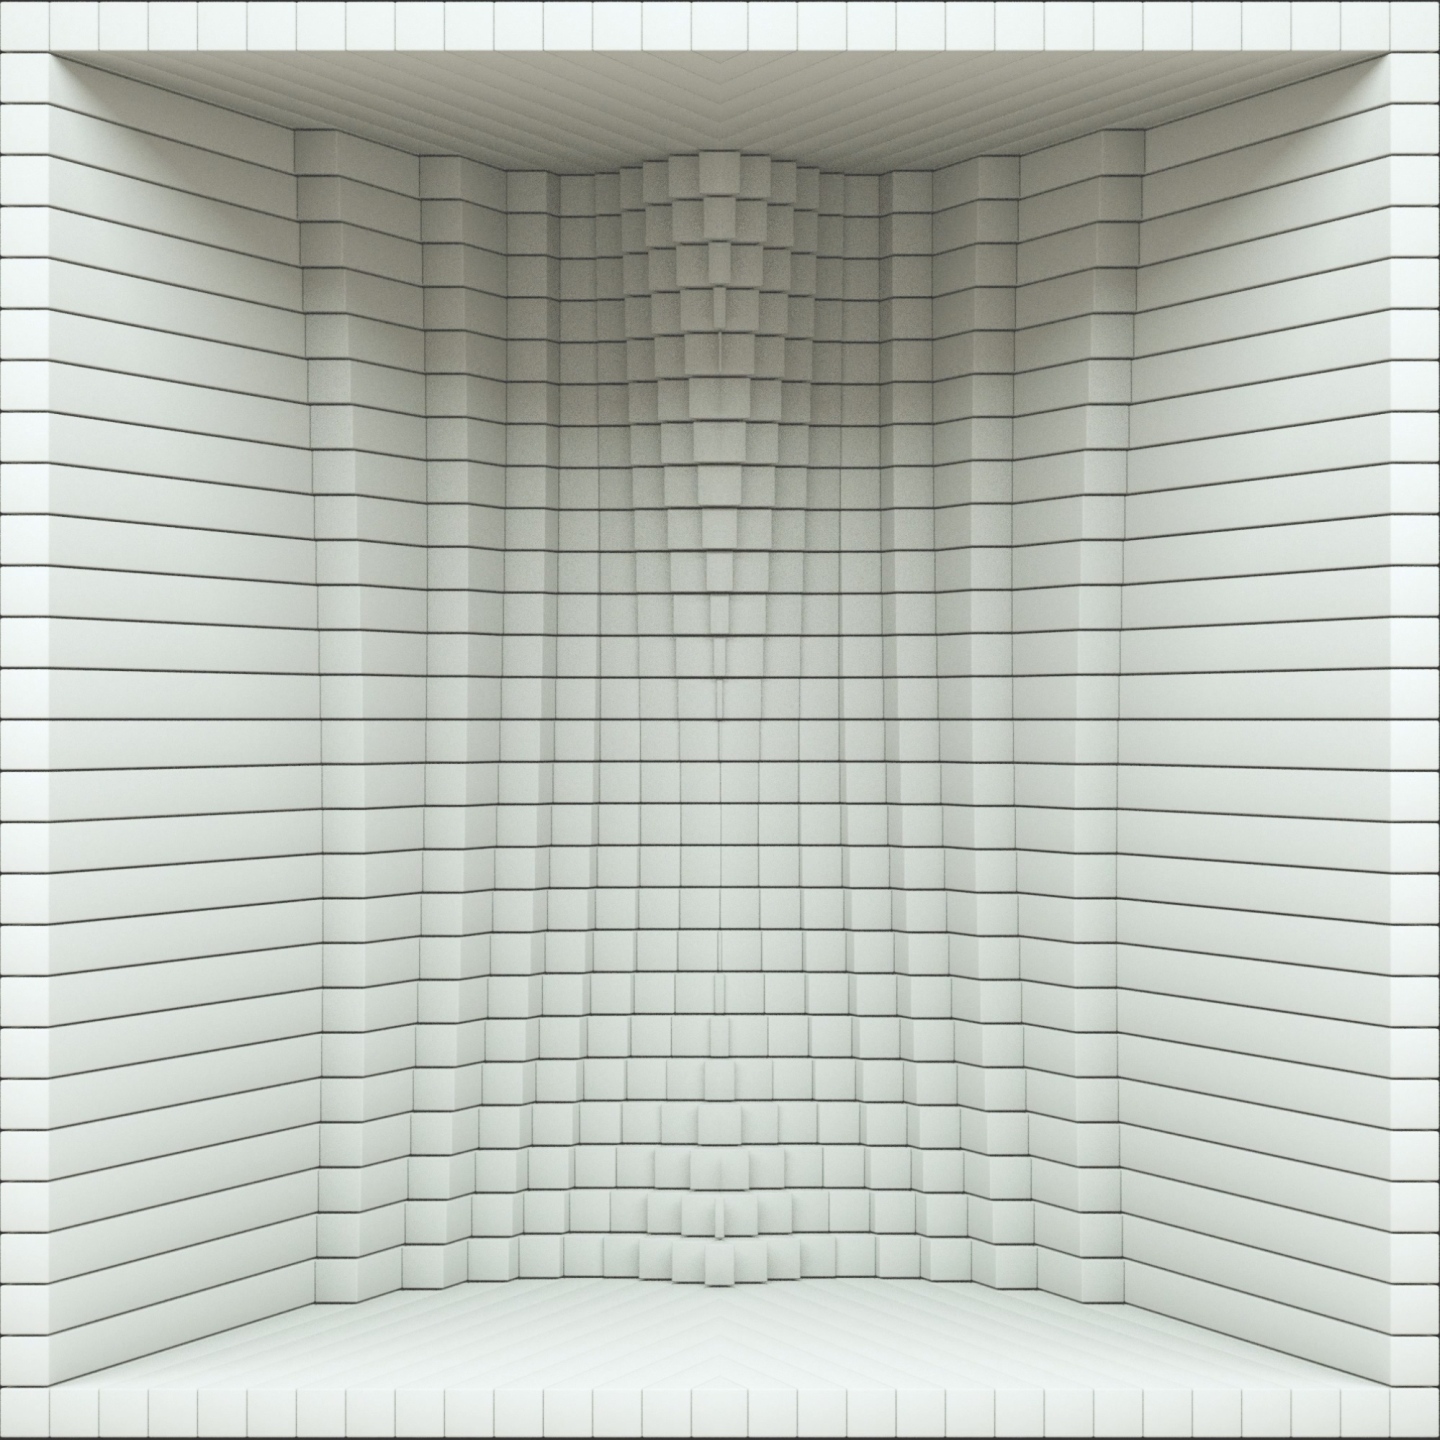 【裸眼3D】白色几何方块矩阵投影艺术空间